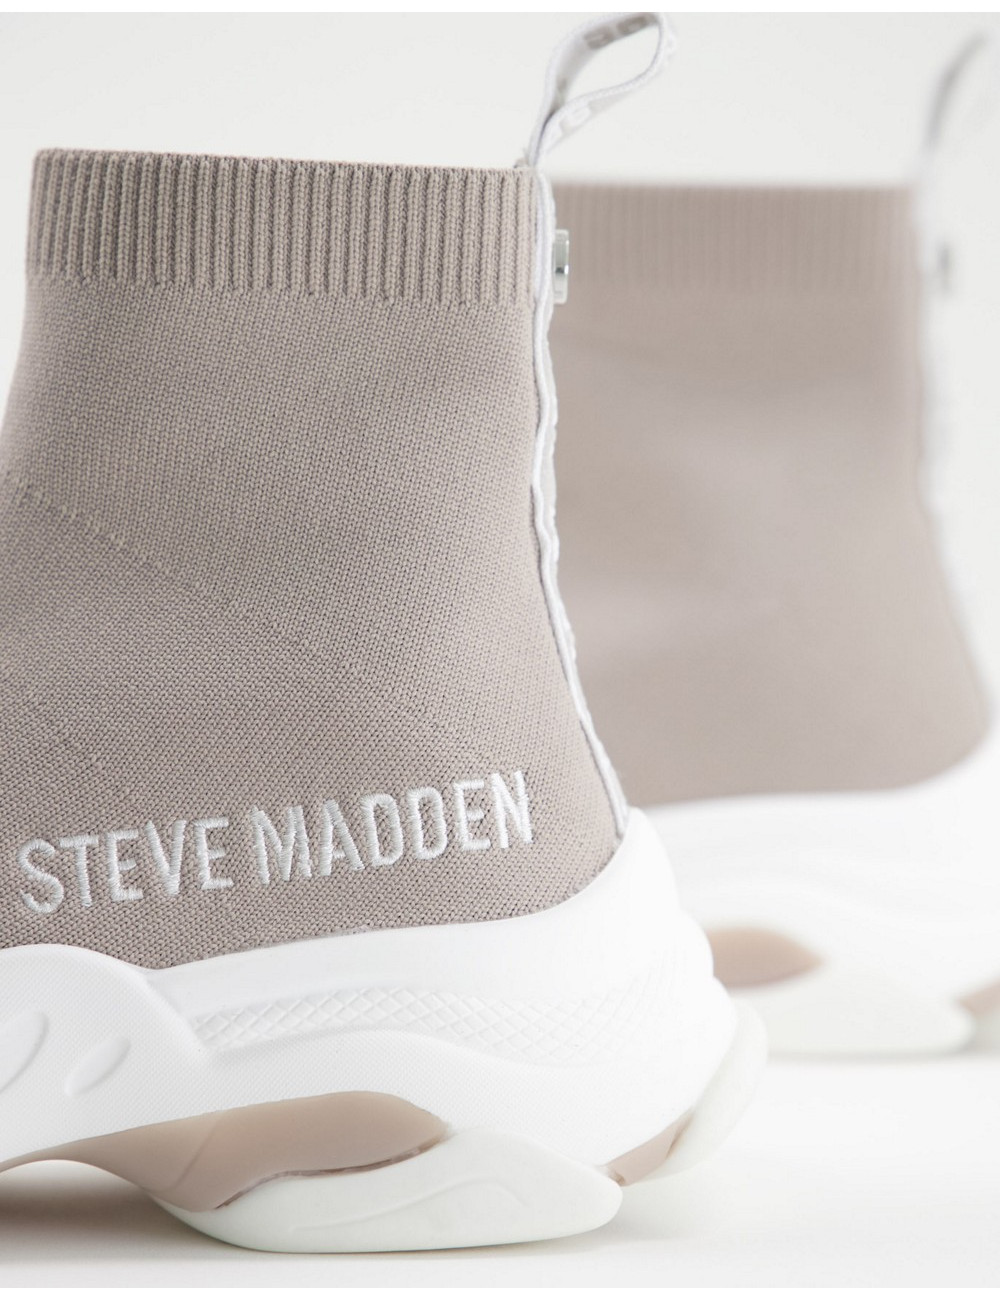 Steve Madden Master sock...